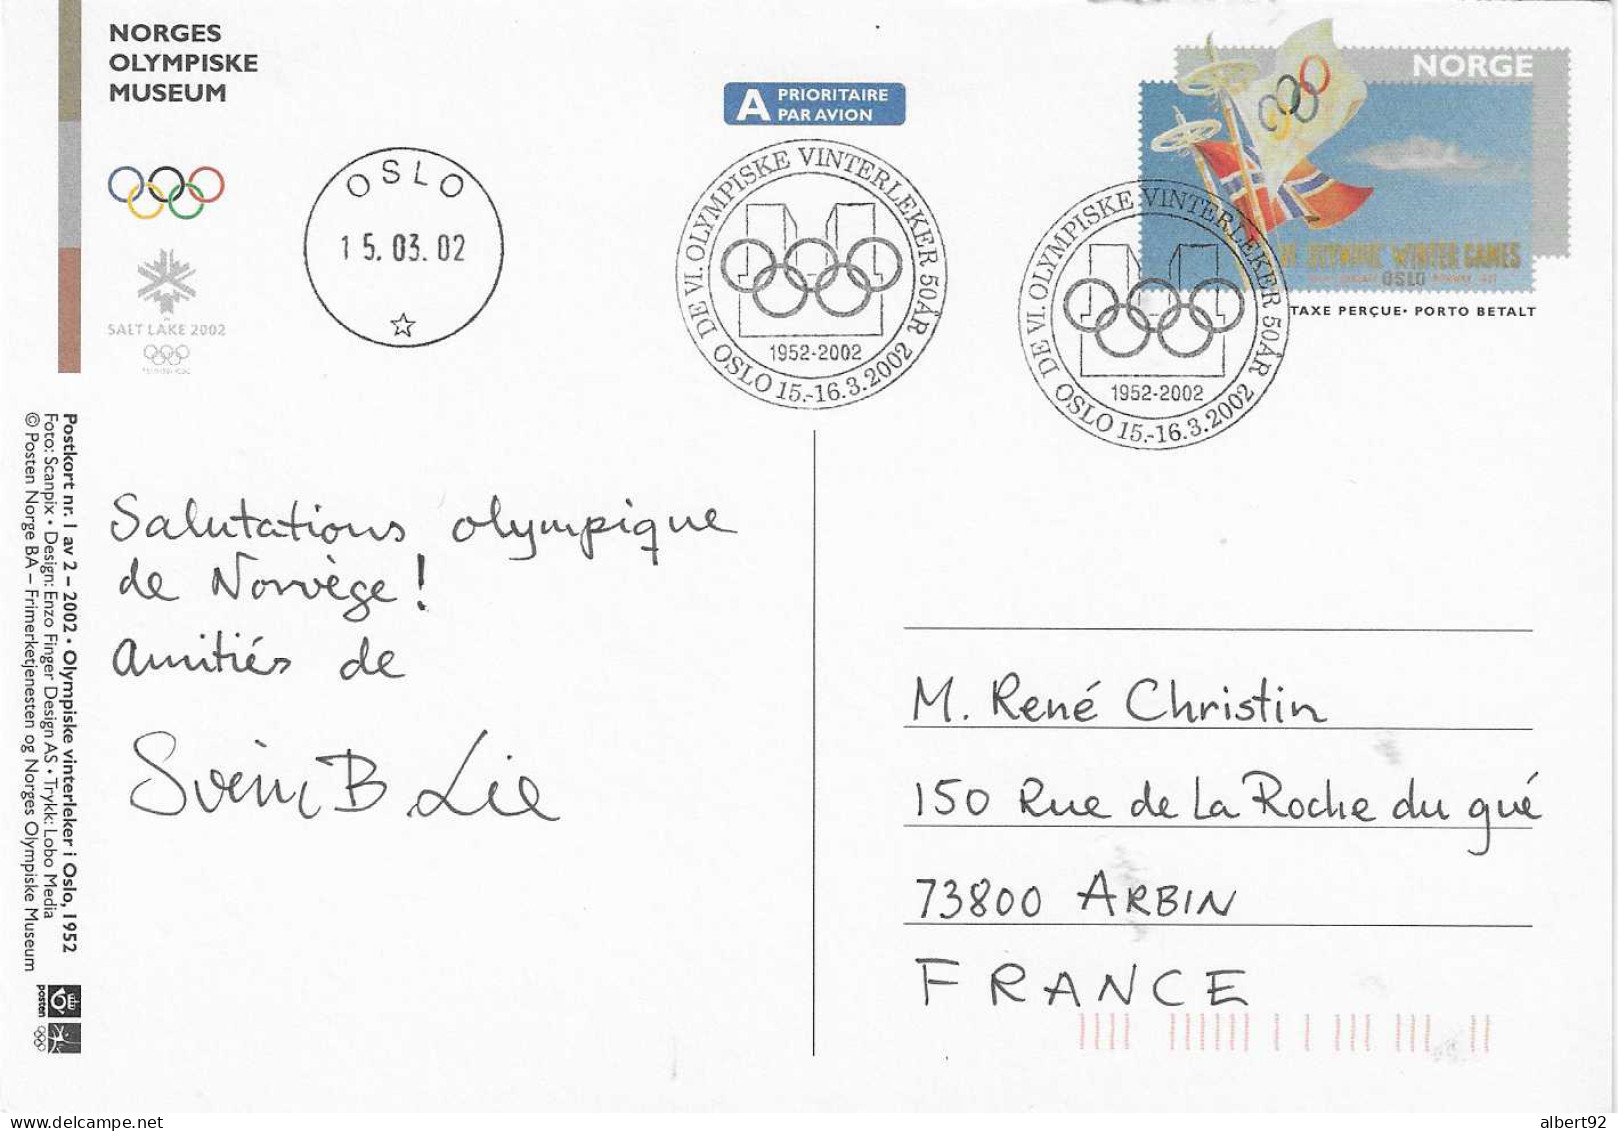 2002 50e Anniv. Des Jeux Olympiques D'Oslo 1952: Hommage Aux Médaillés Or: H.Andersen (patinage)et H.Brenden (ski Fond) - Winter 1952: Oslo